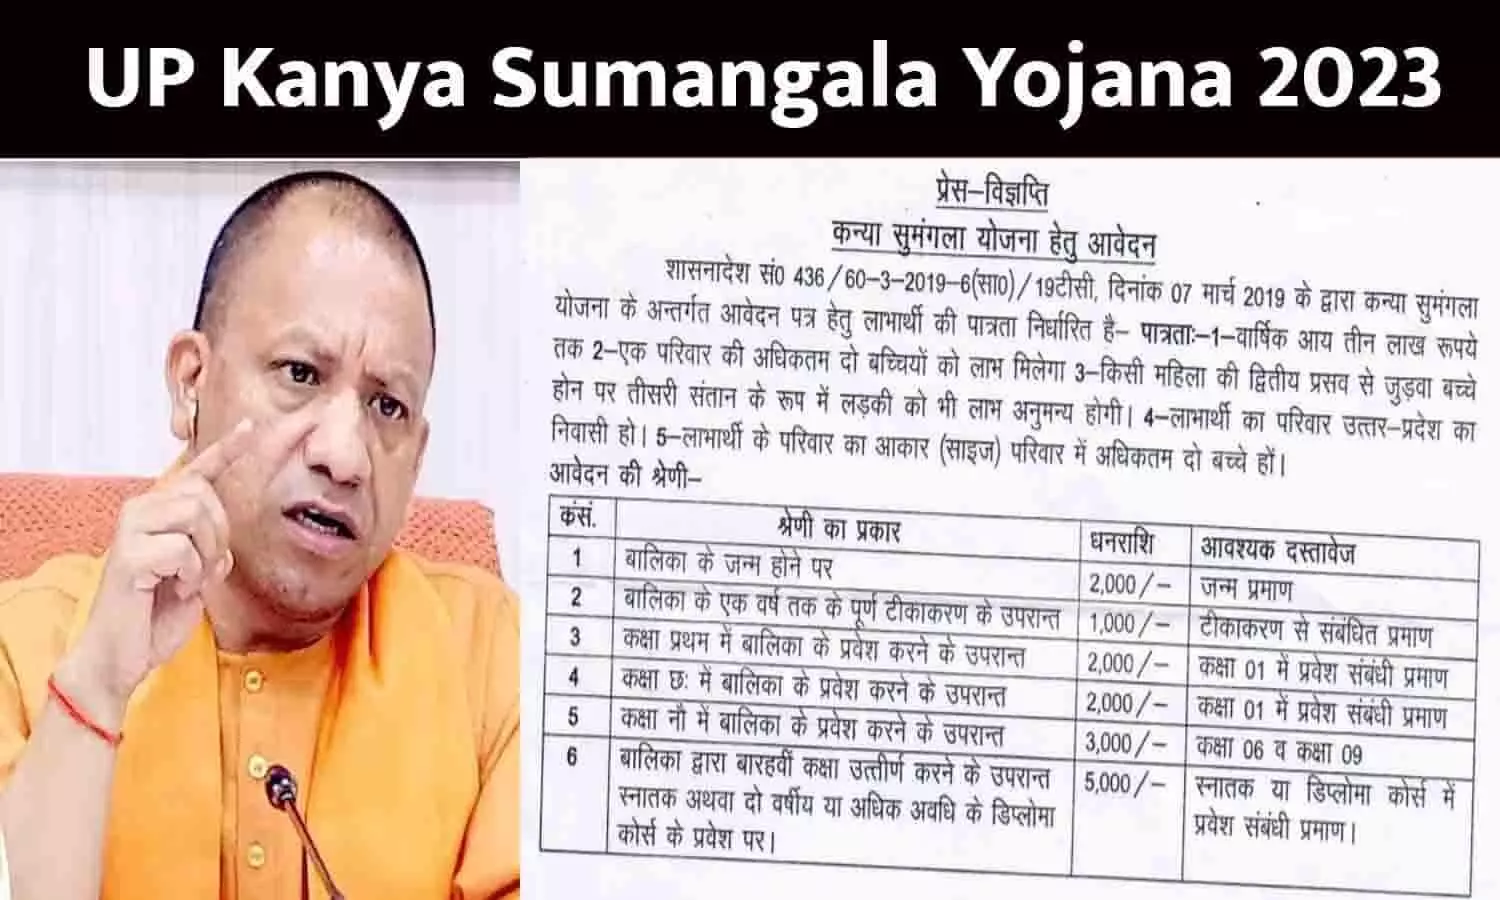 UP Kanya Sumangala Yojana Apply Online In Hindi 2023: बेटियों के खाते में आएंगे ₹15000, फटाफट उठाएं लाभ, आखिरी मौका नजदीक